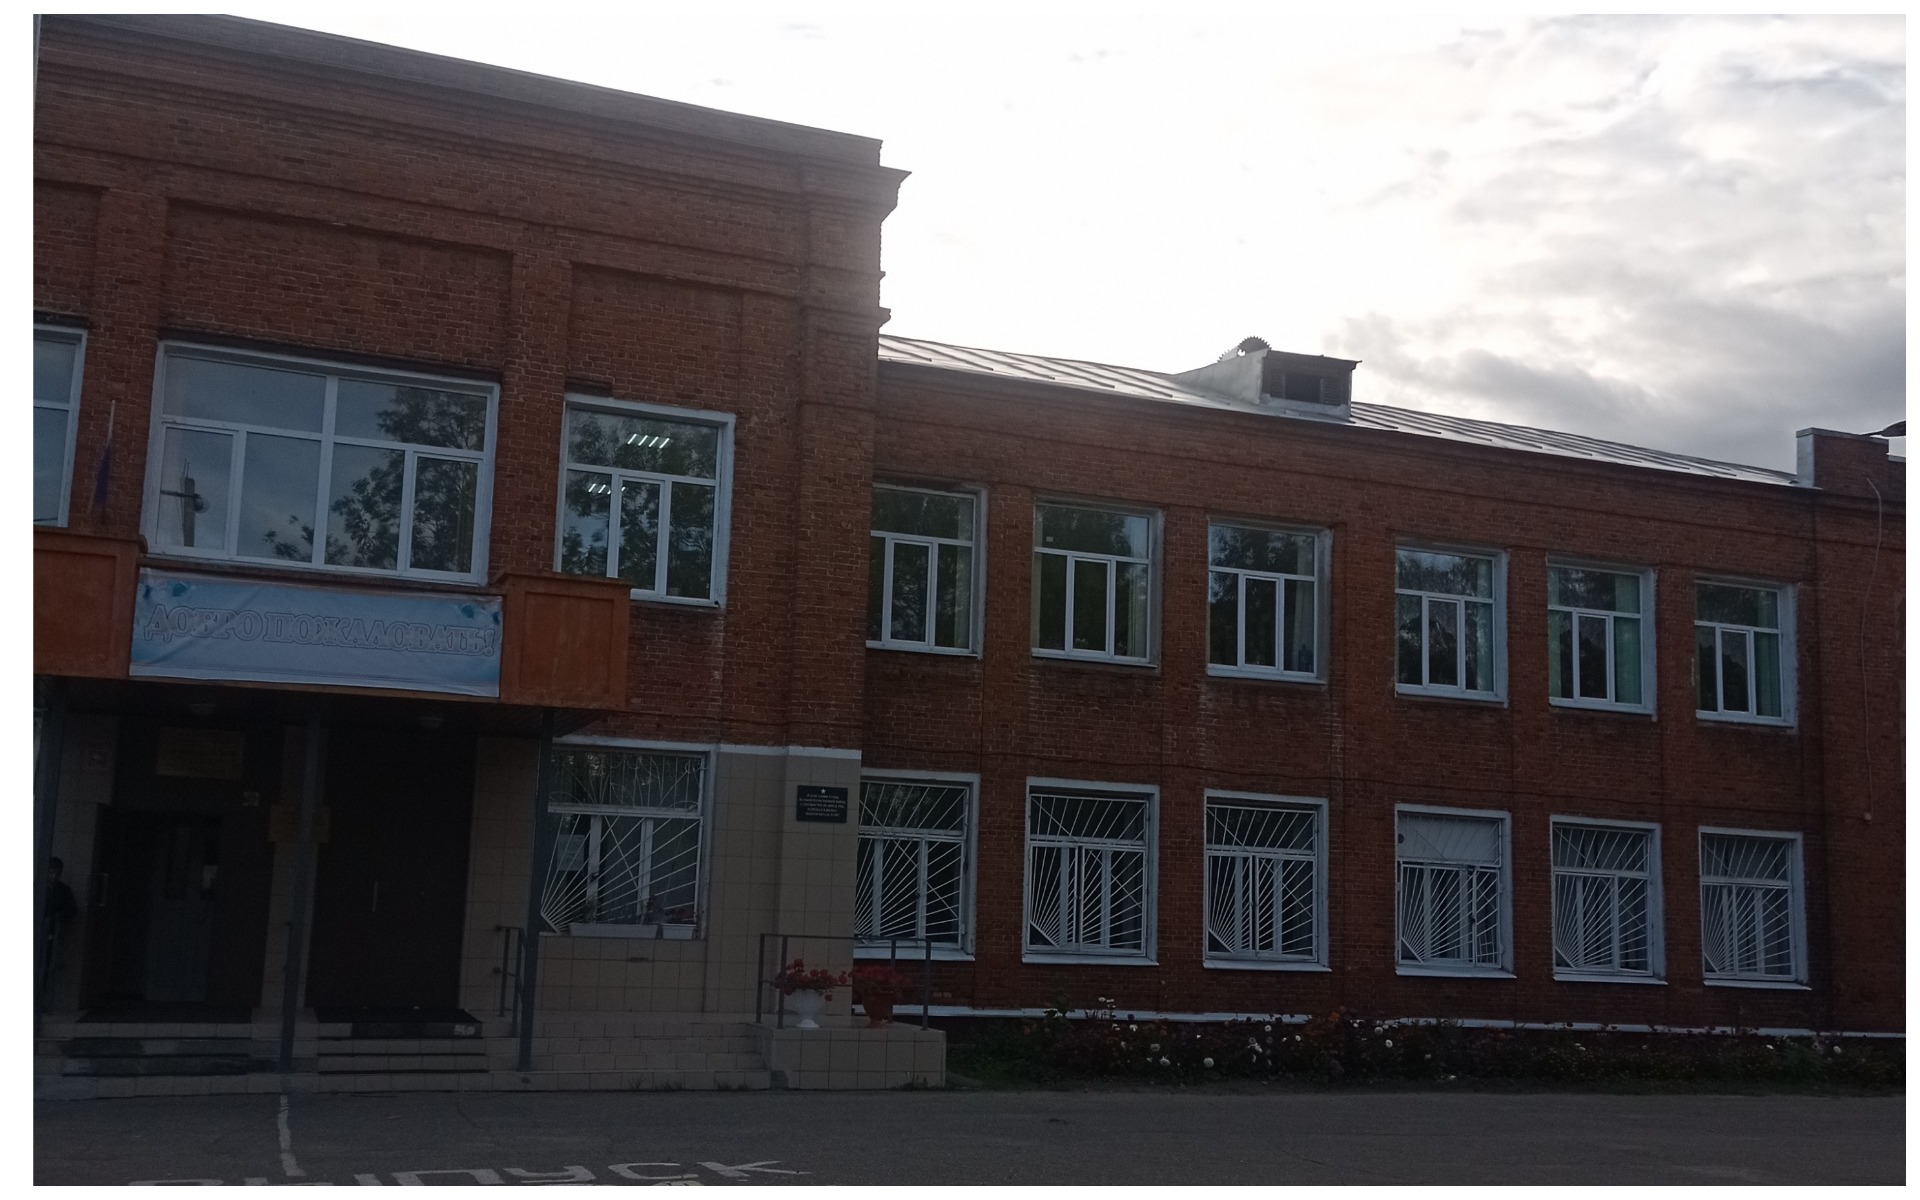 МБОУ средняя школа 24 г. Иваново.